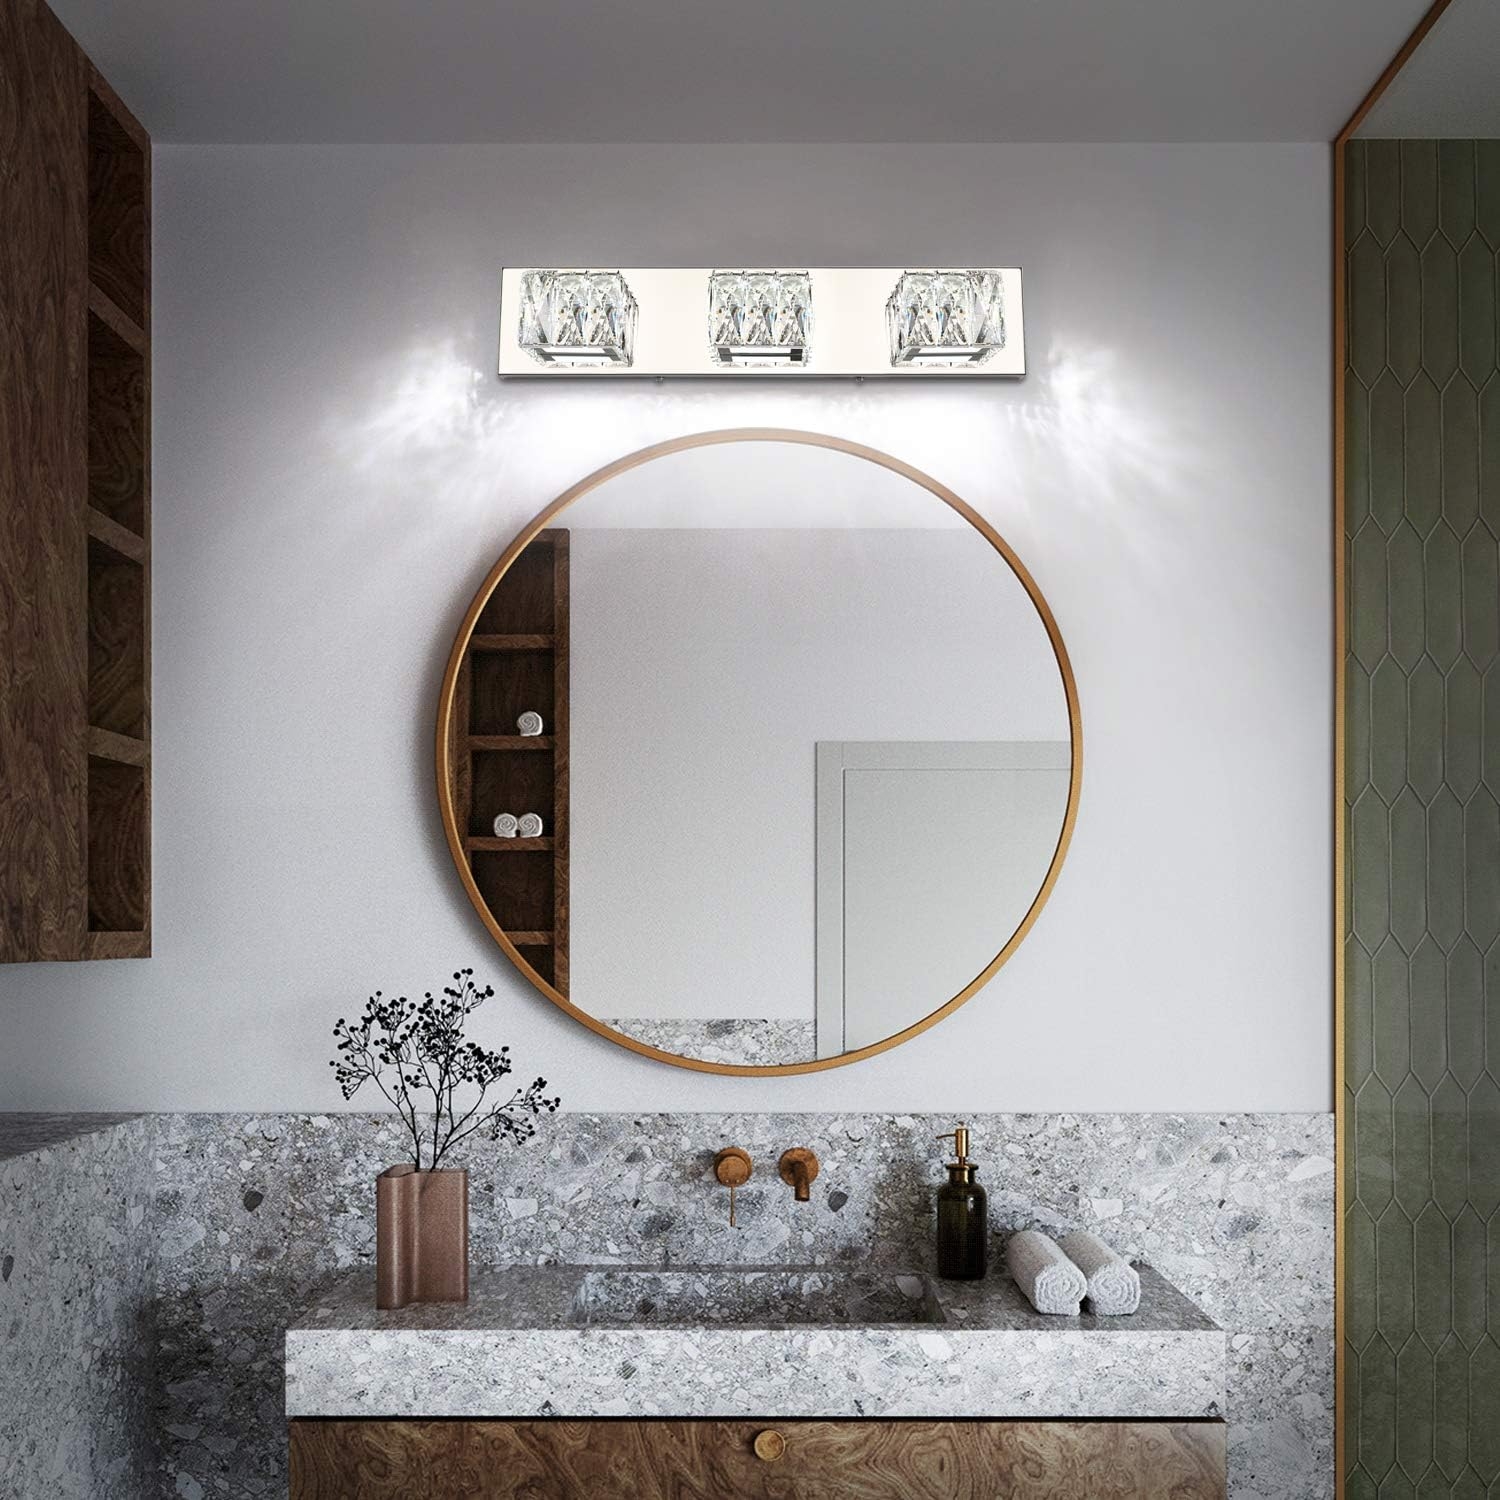 ZUZITO LED Bathroom Vanity Lighting Fixtures Modern Crystal Vanity Light Over Mirror White Light(3 Lights)